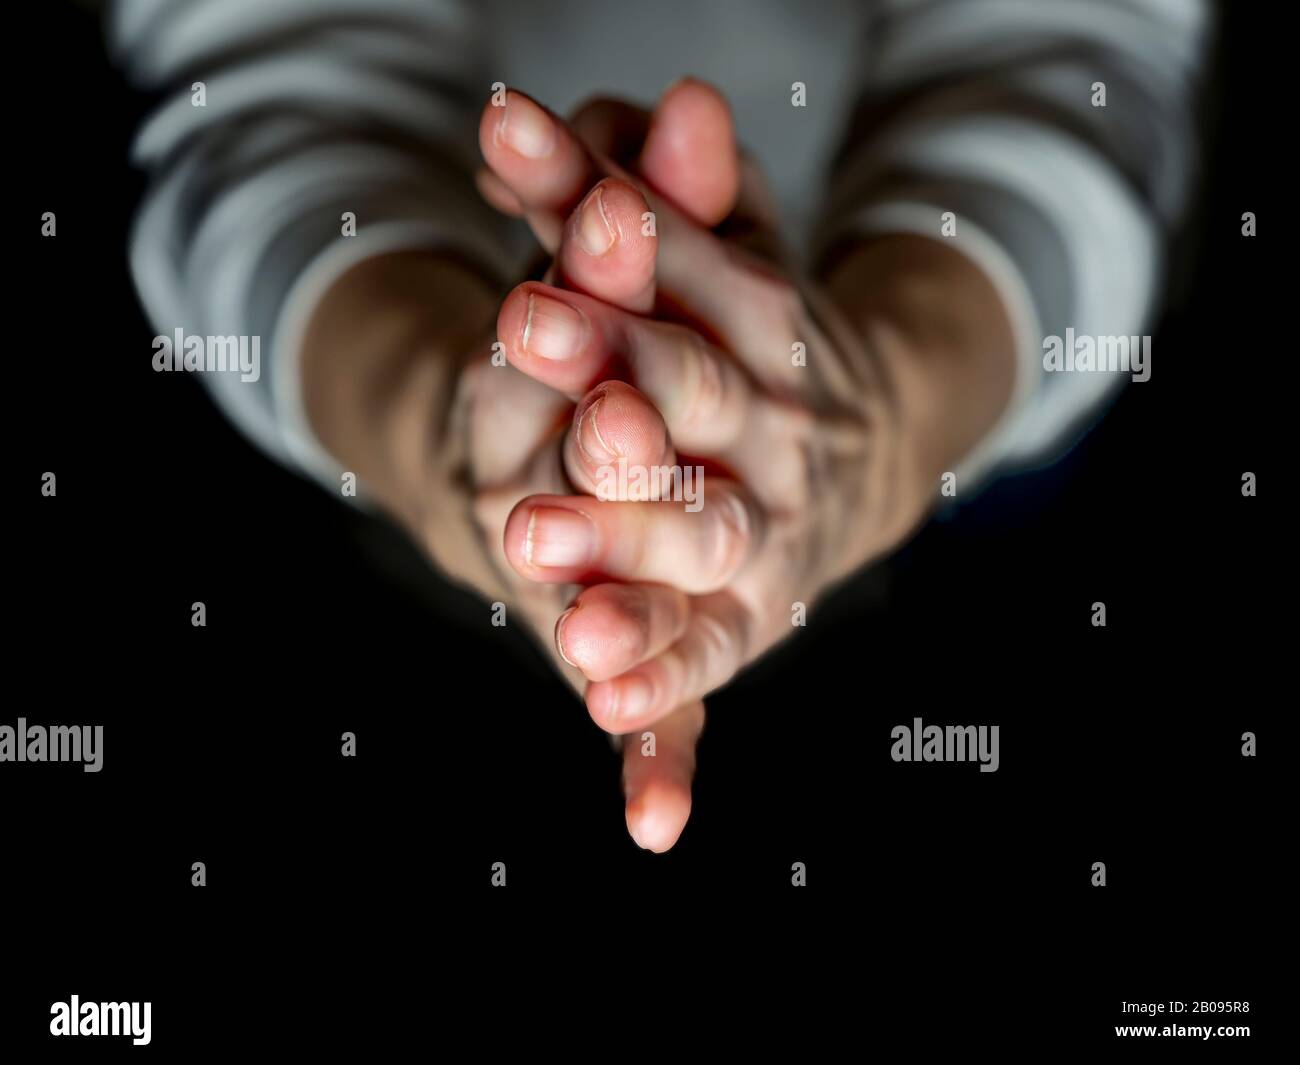 Dettaglio delle mani della donna unite in preghiera su sfondo nero Foto Stock